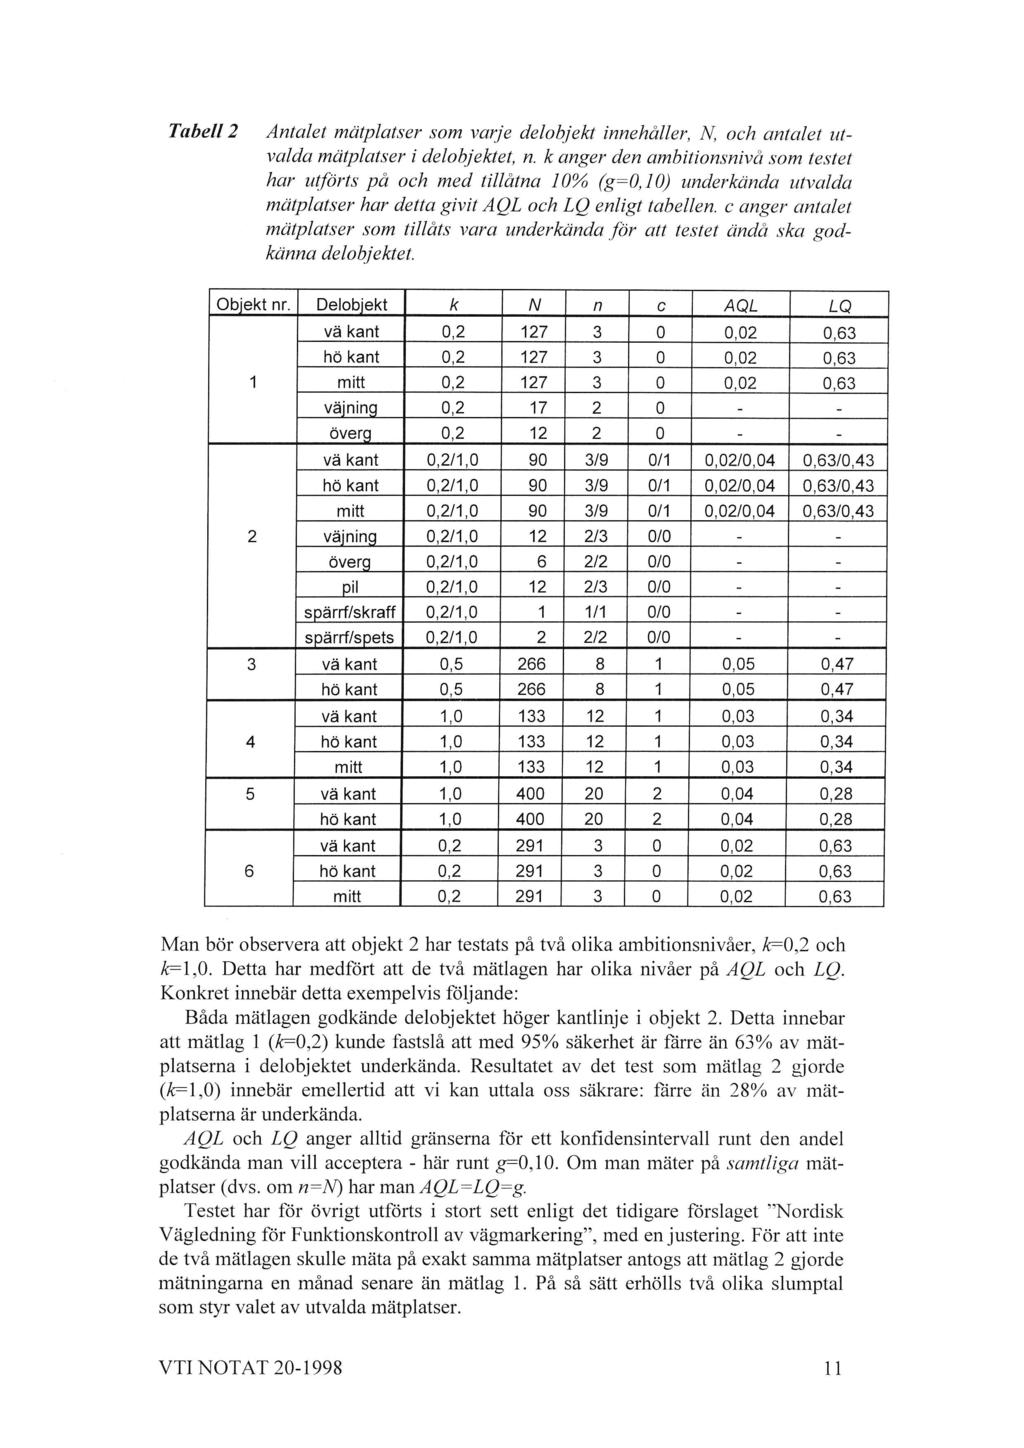 Tabell 2 Antalet mätplatser som varje delobjekt innehåller, N, och antalet utvalda mätplatser i delobjektet, n.